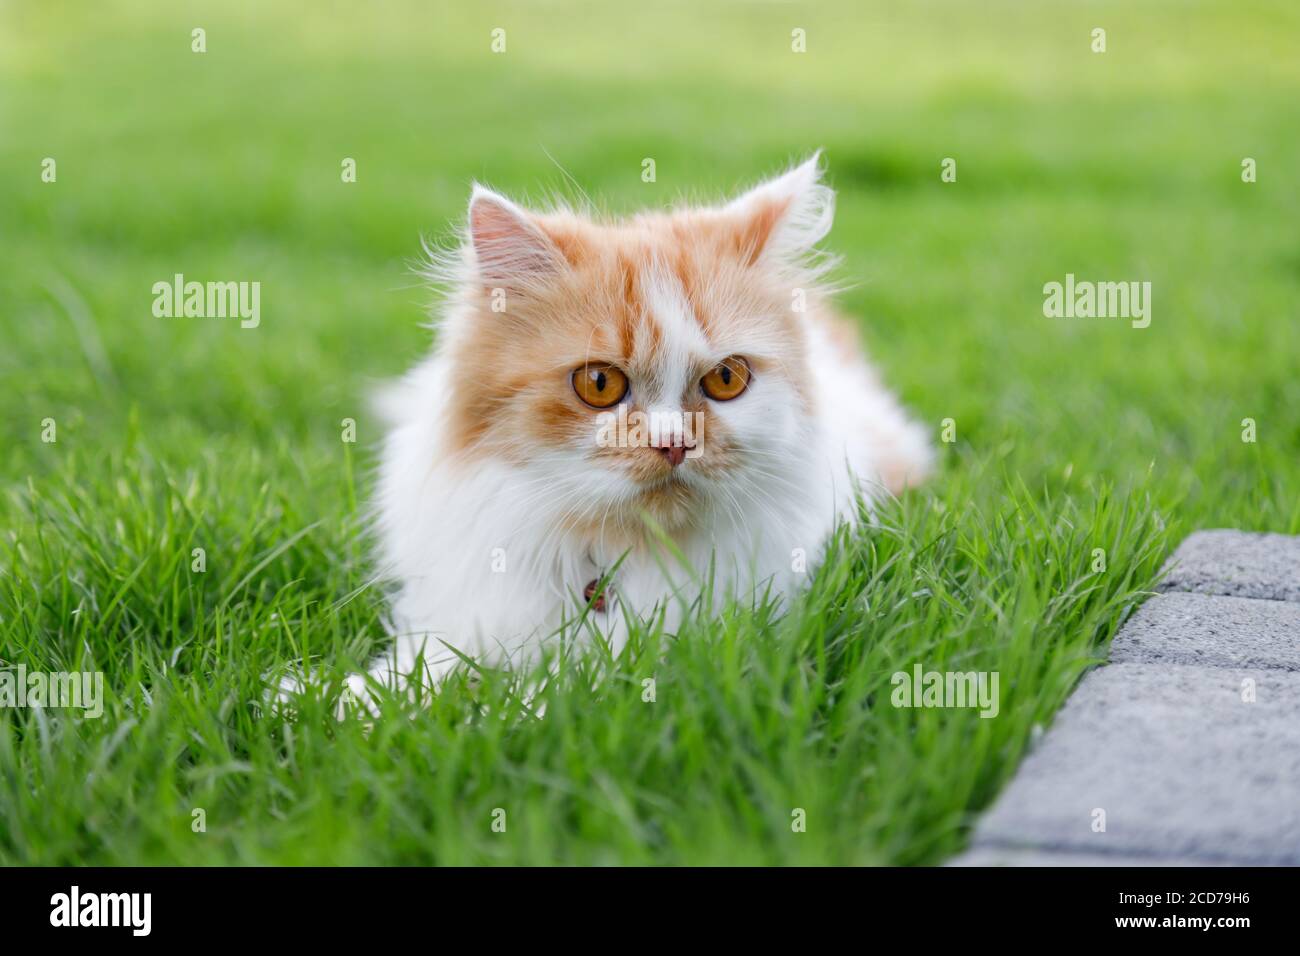 Le chat persan mignon est assis sur un champ d'herbe verte, et regarde quelque chose, sélectif foyer faible profondeur de champ Banque D'Images